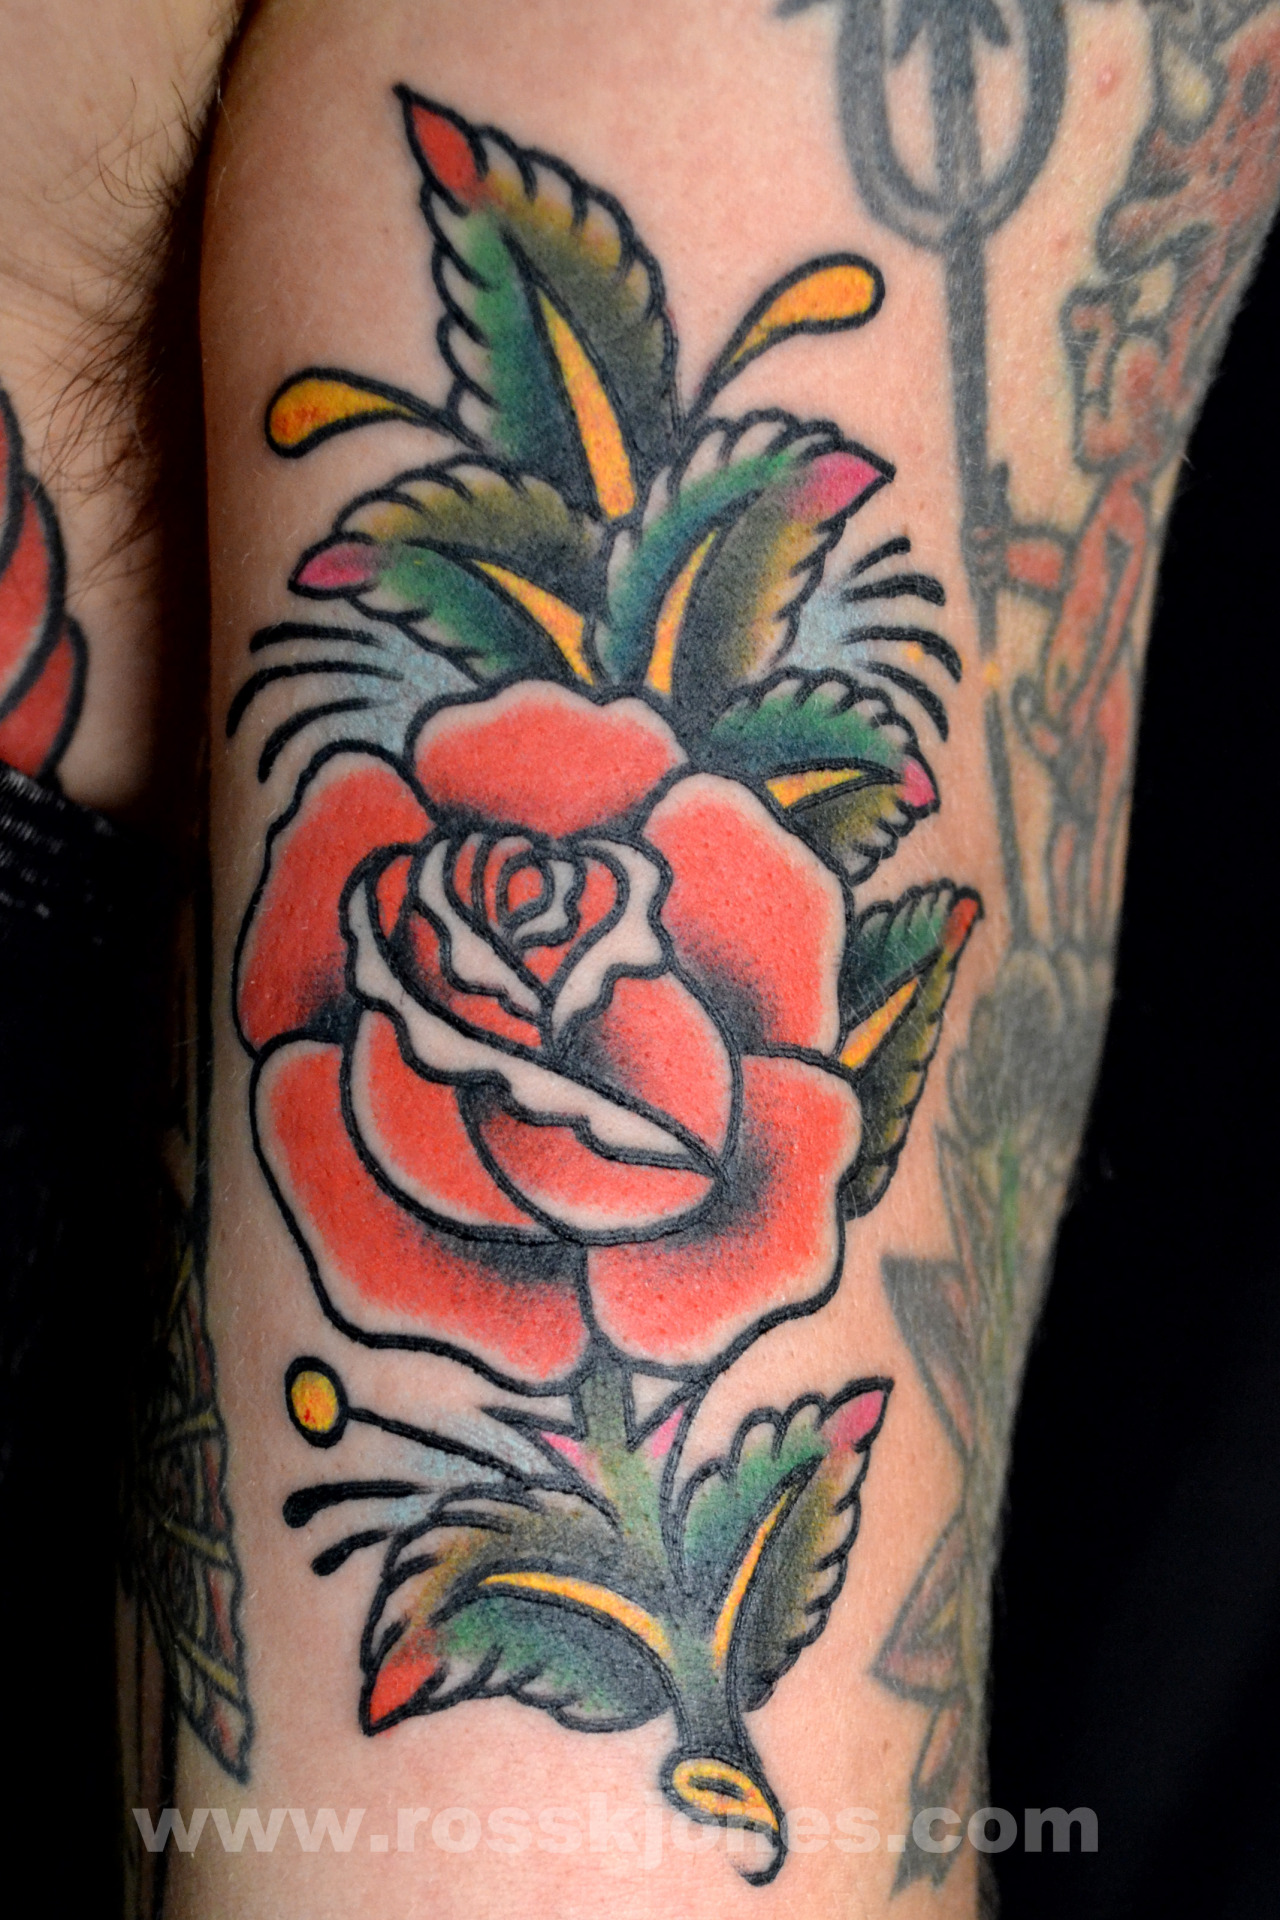 sailor jerry rose tattoo